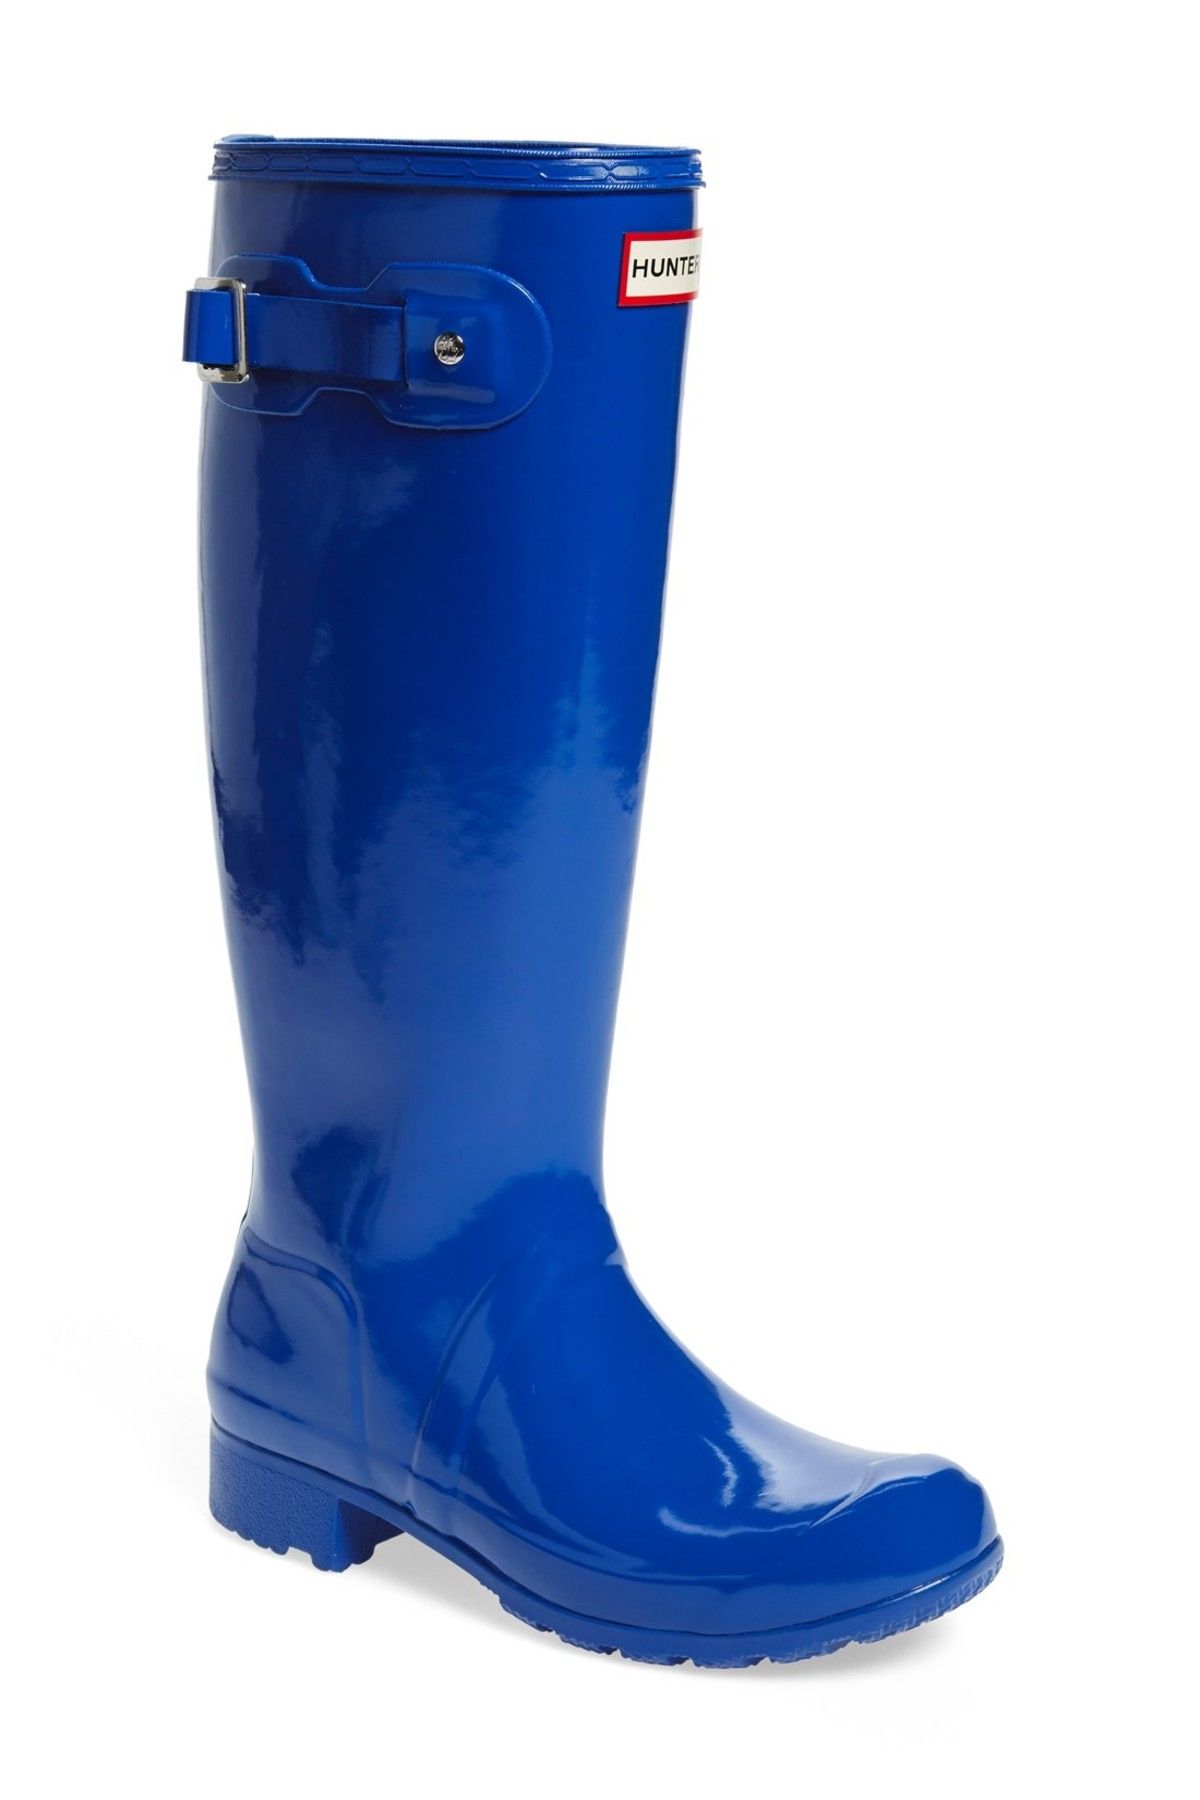 waterproof boots nordstrom rack